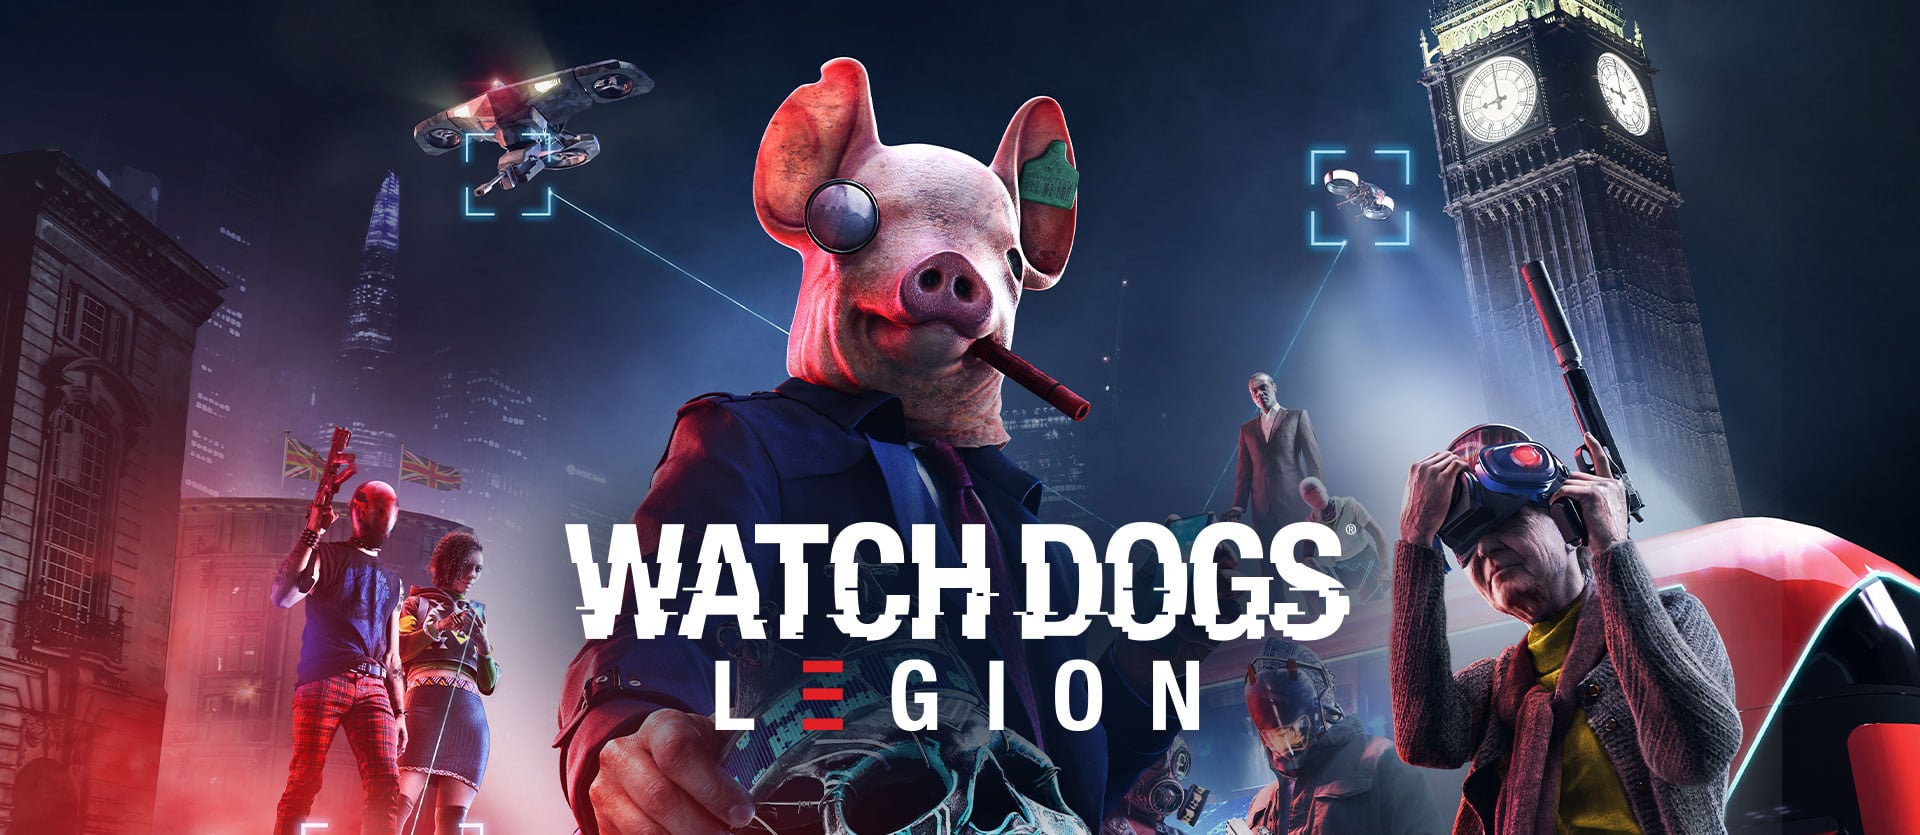 Watch Dogs Legion, Ubisoft, GamersRD